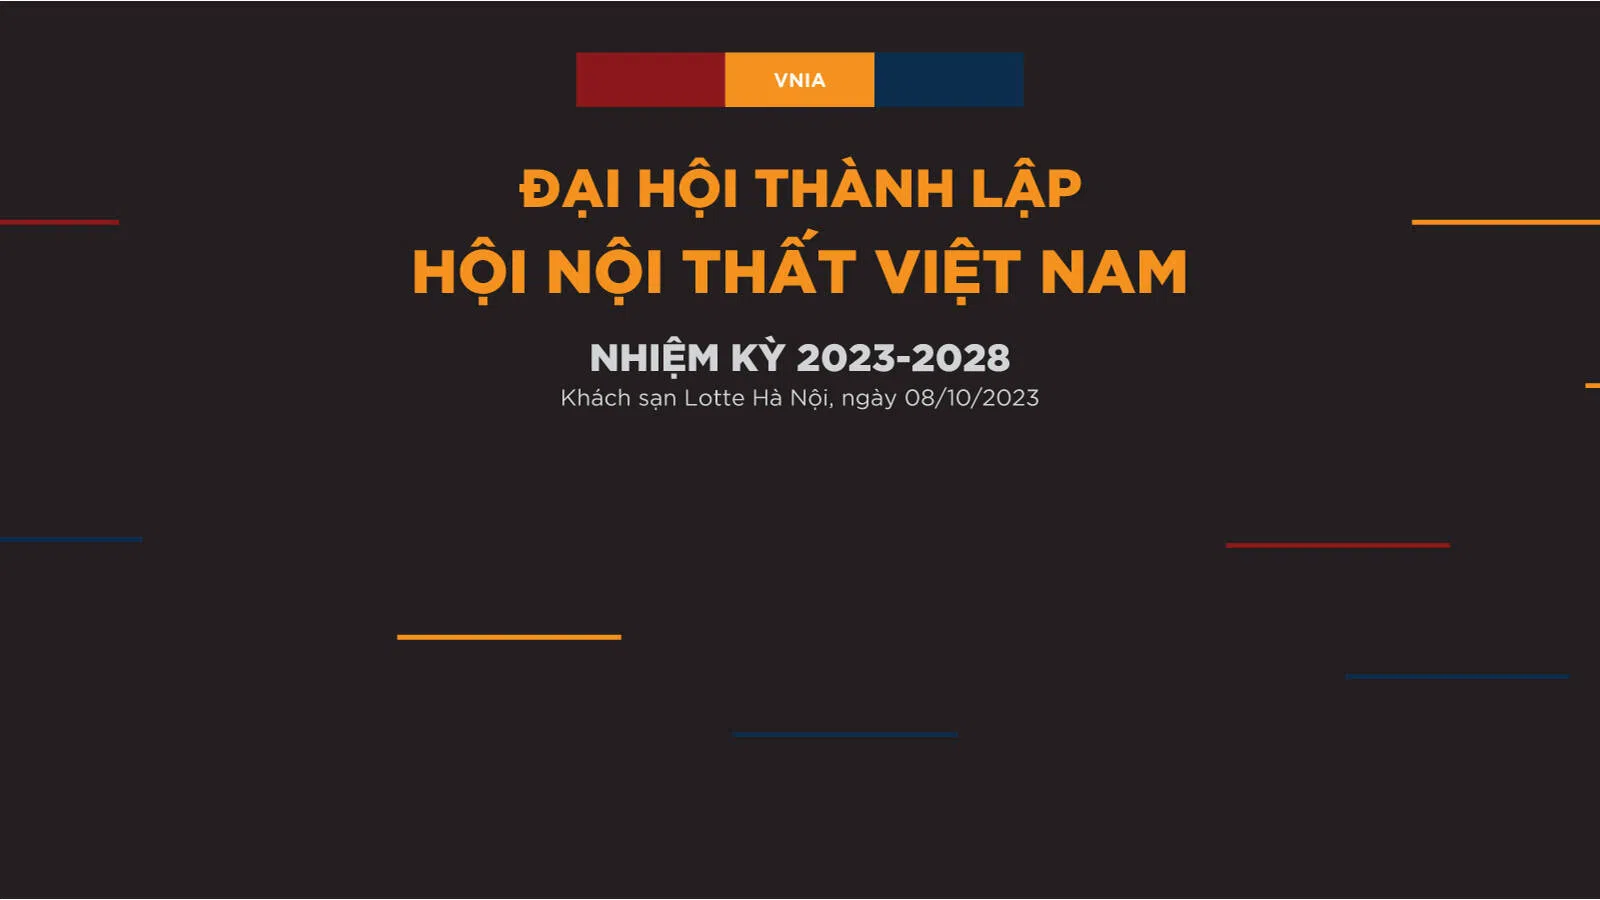 Đại hội thành lập Hội Nội thất Việt Nam nhiệm kỳ 2023 – 2028